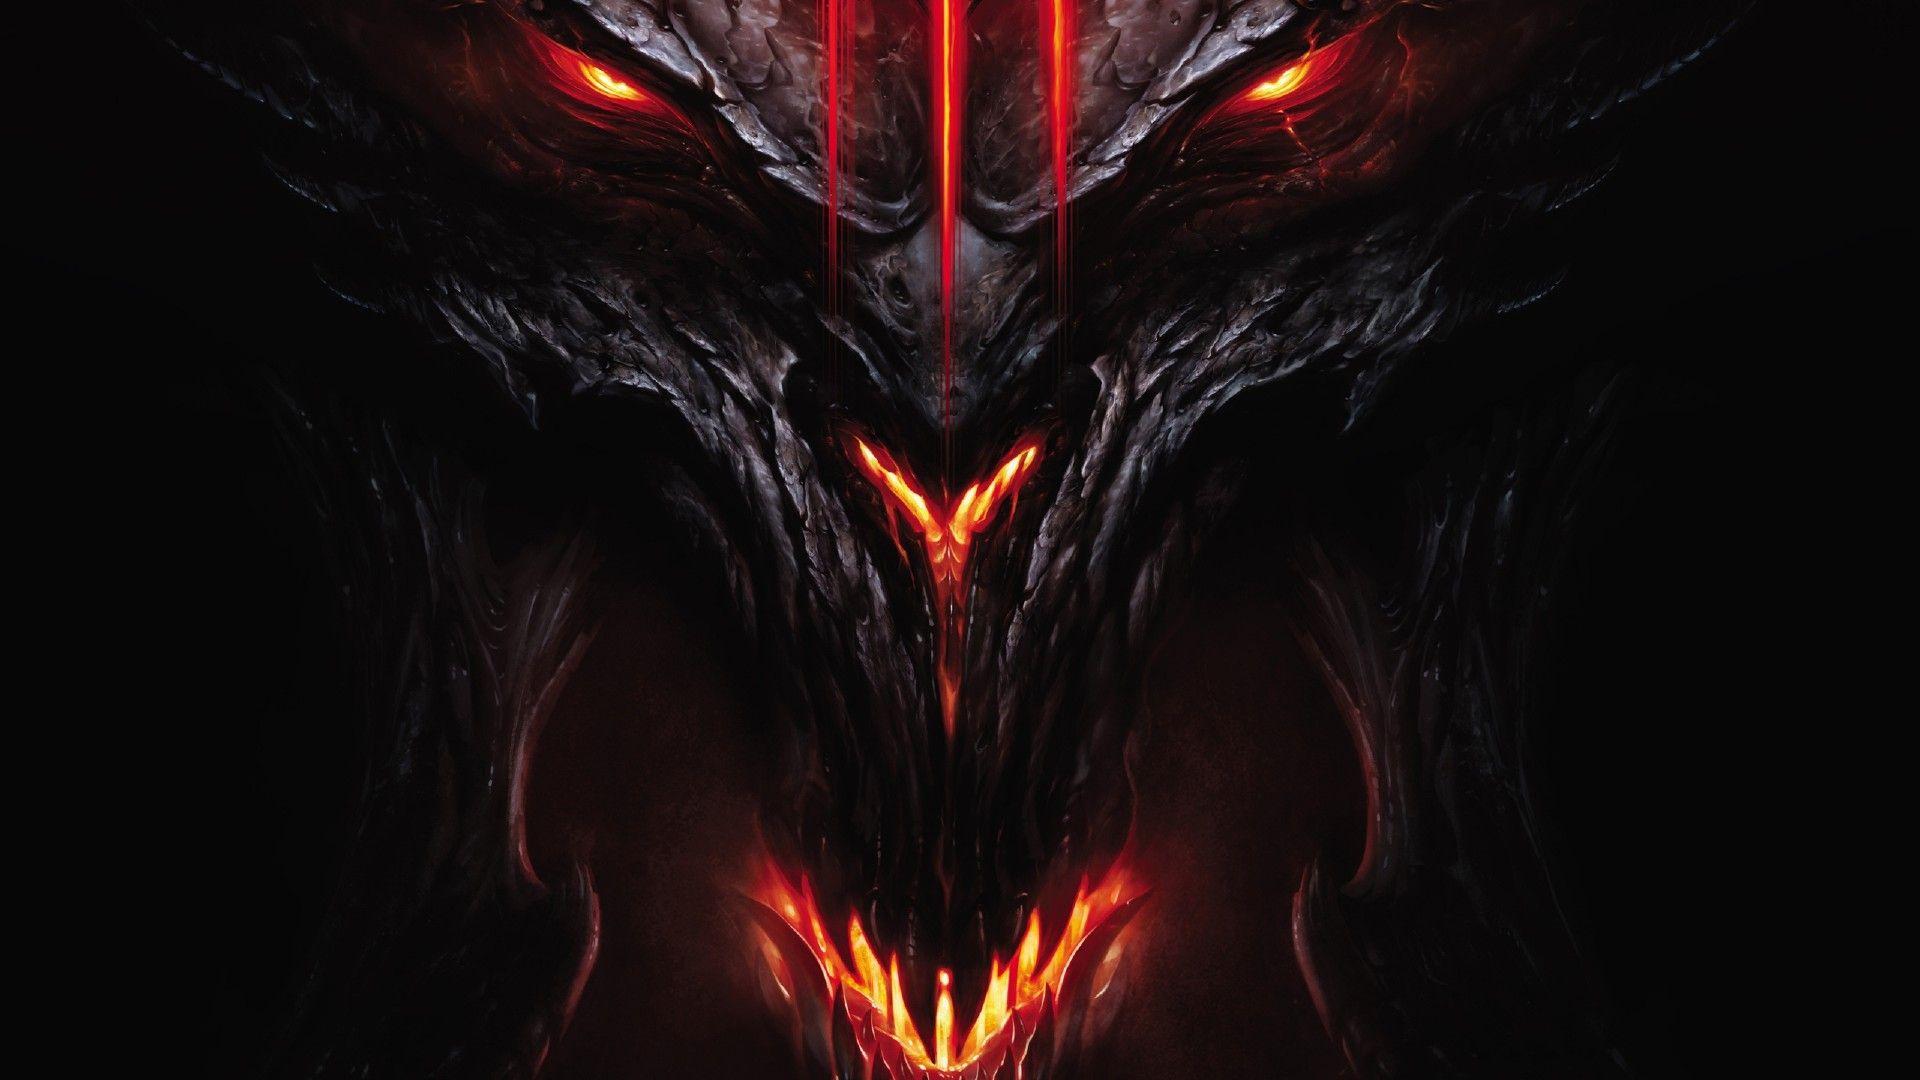 Download 1920x1080 HD Wallpaper diablo logo demon hell evil fire